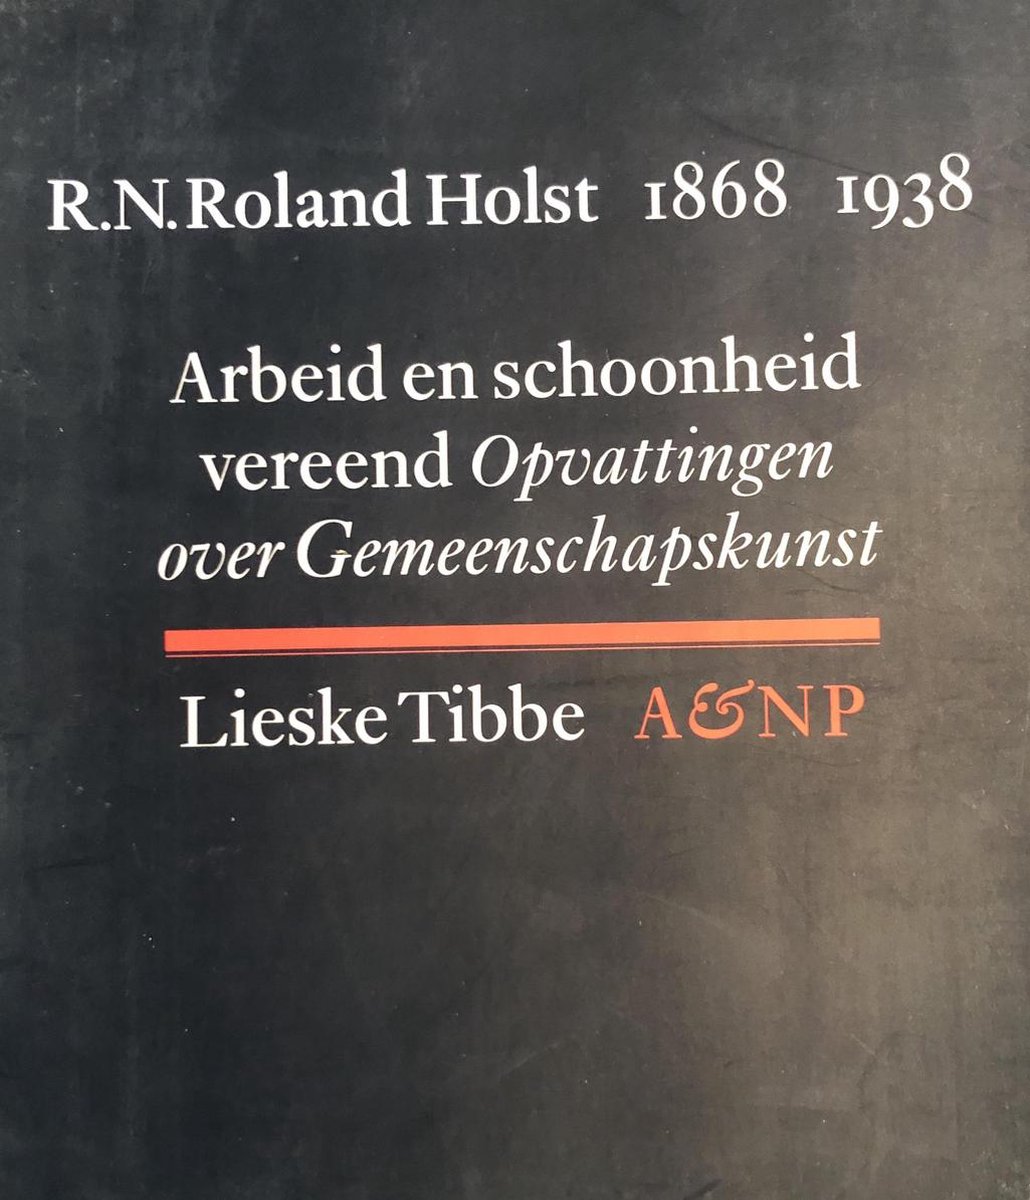 R. N. Roland Holst / Nijmeegse kunsthistorische studies / 2